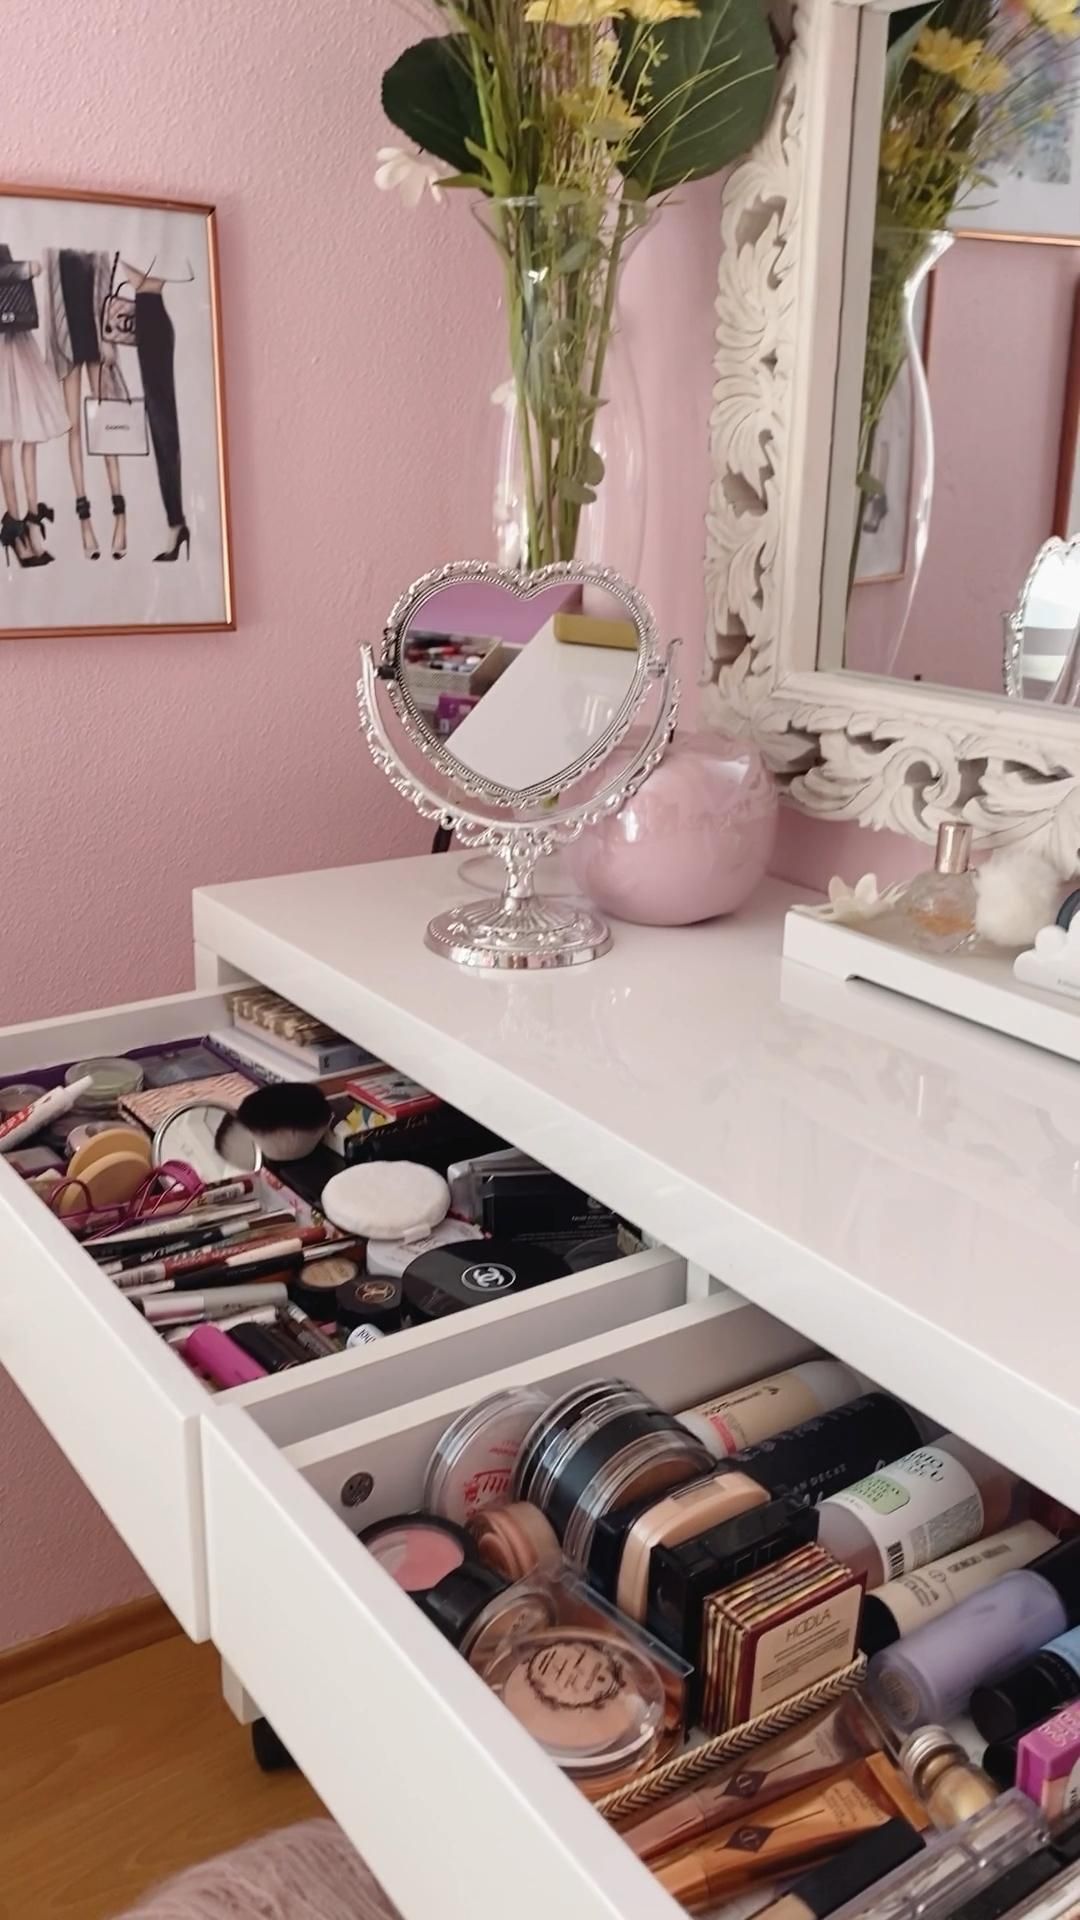 Makeup Desk with mirror ? - Makeup Desk with mirror ? -   17 beauty salon ideas